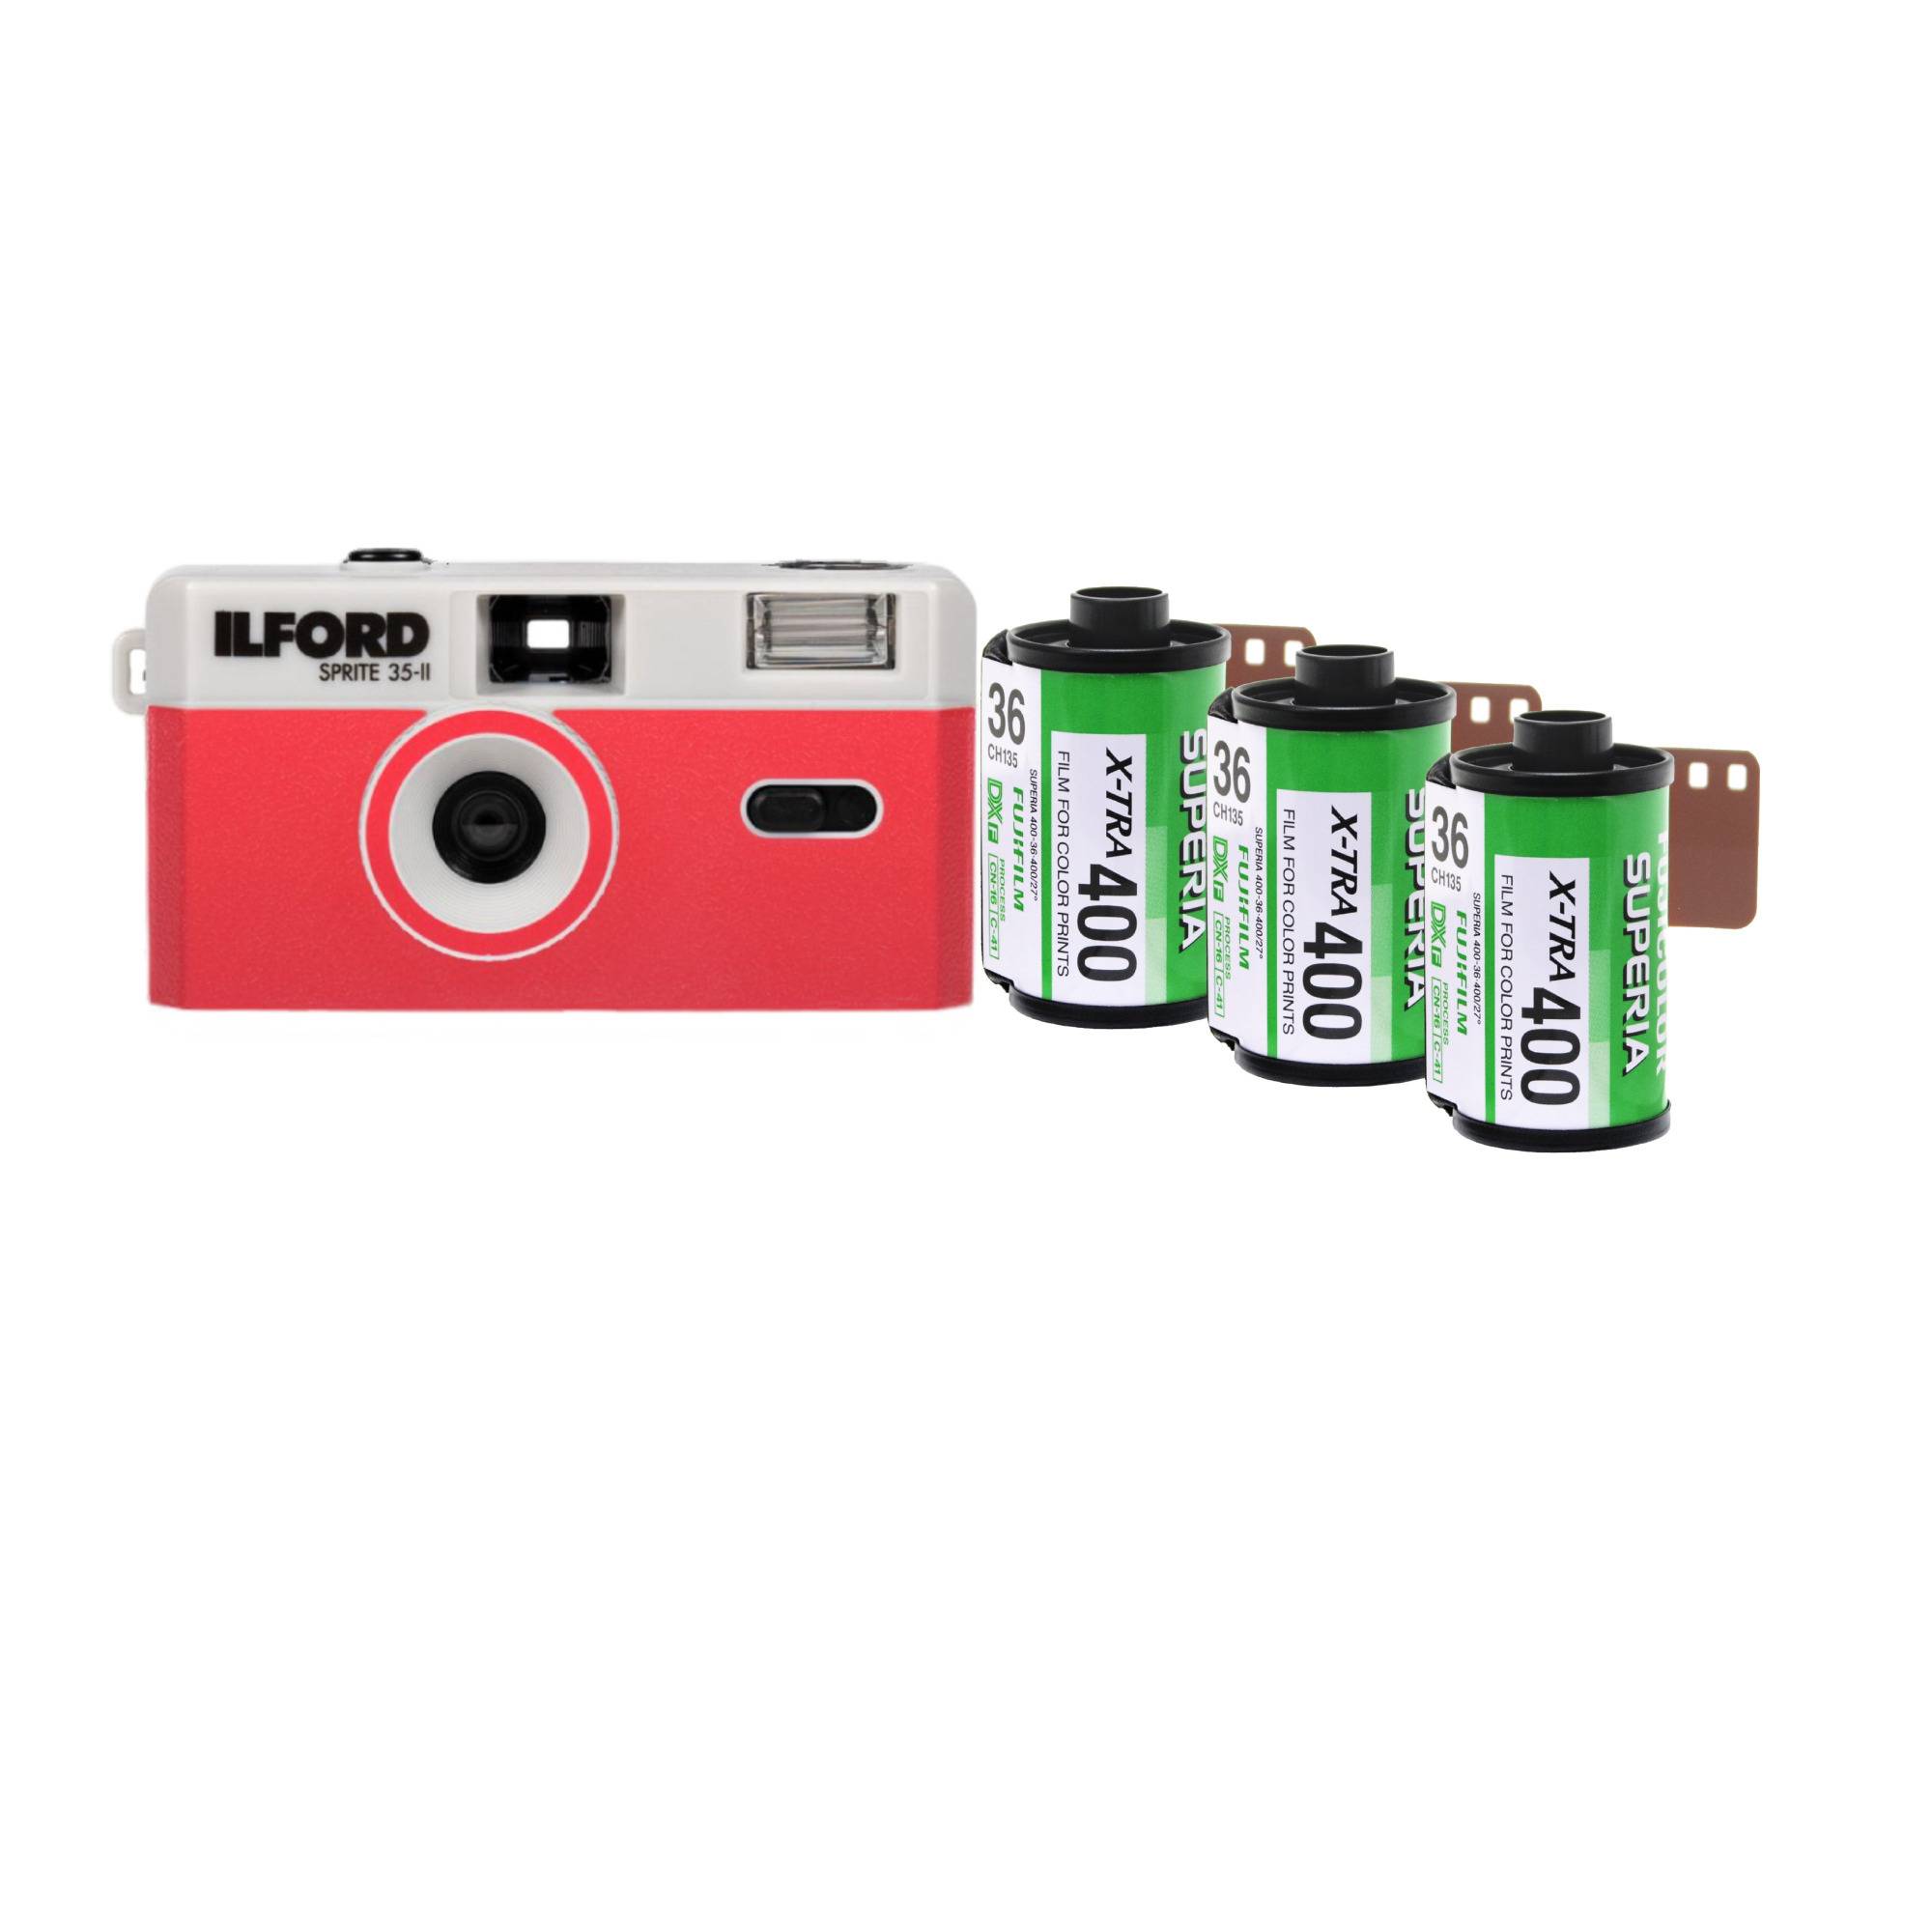 Ilford Sprite 35-II Reloadable 35mm Film Camera (Red) with 3x Fujicolor Superia X-TRA 400 Film